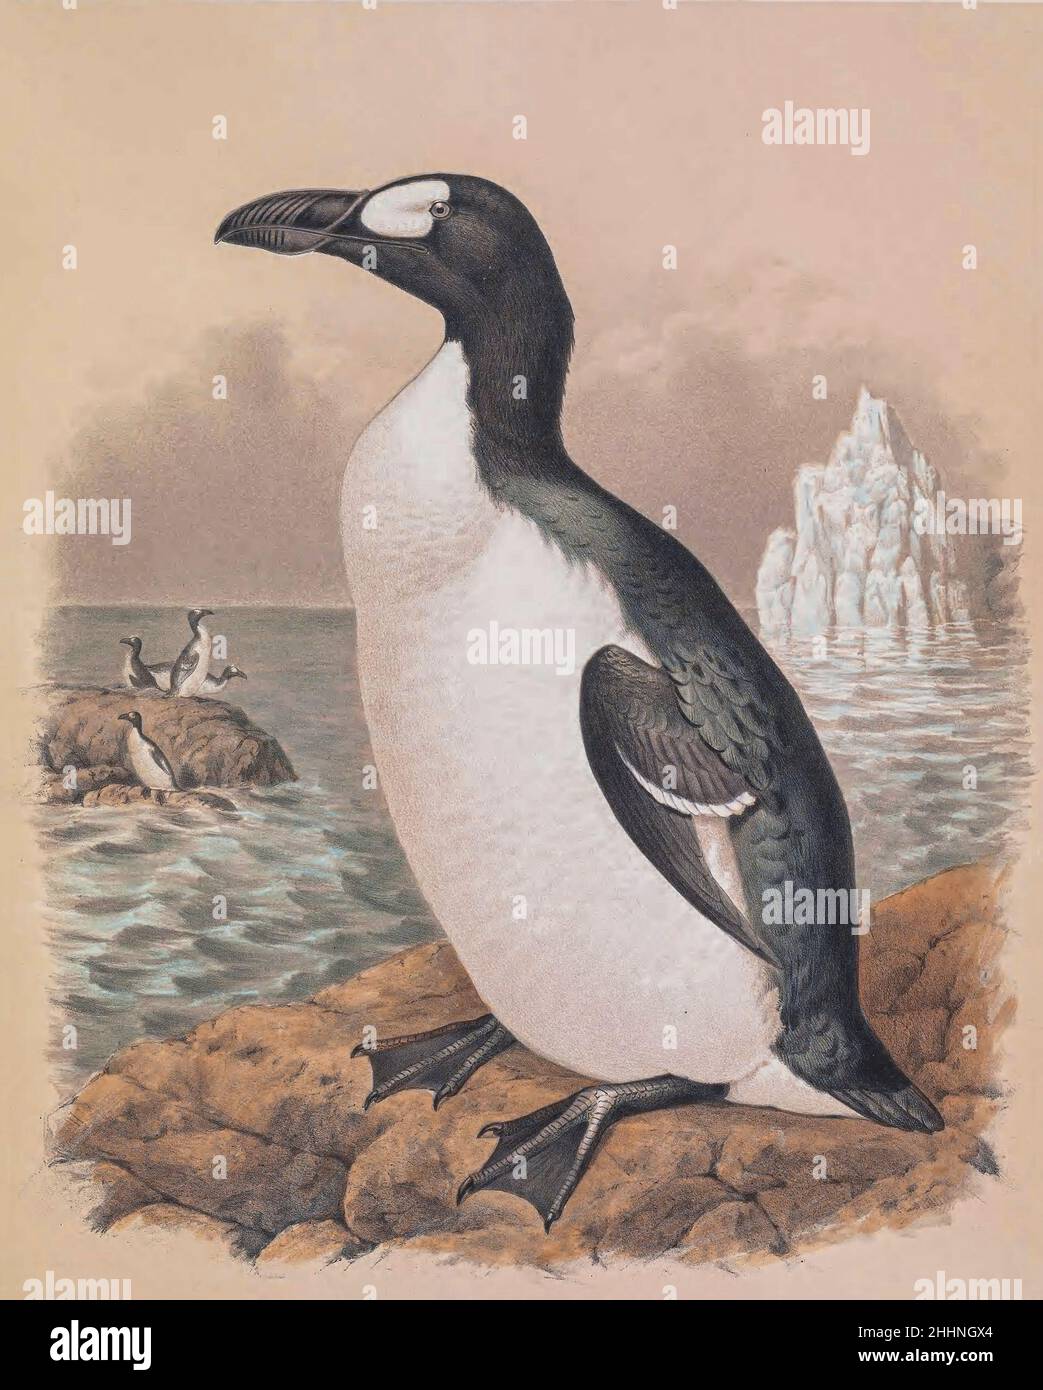 Die große Auche (Pinguinus impennis) ist eine Art von flugunem Alcid, die Mitte des 19th. Jahrhunderts ausgestorben ist. Sie war die einzige moderne Art der Gattung Pinguinus. Es ist nicht eng verwandt mit den Vögeln, die jetzt als Pinguine bekannt sind, die später von Europäern entdeckt und so von Matrosen wegen ihrer physischen Ähnlichkeit mit der großen Auk benannt wurden. Getönte Lithographie, illustriert von Joseph Smit, Aus dem Buch "die schönen und neugierigen Vögel der Welt" von Charles Barney Cory, Veröffentlicht vom Autor für die Abonnenten Boston USA 1883. Die Platten sind getönte Lithographien, einige mit zusätzlichen han Stockfoto